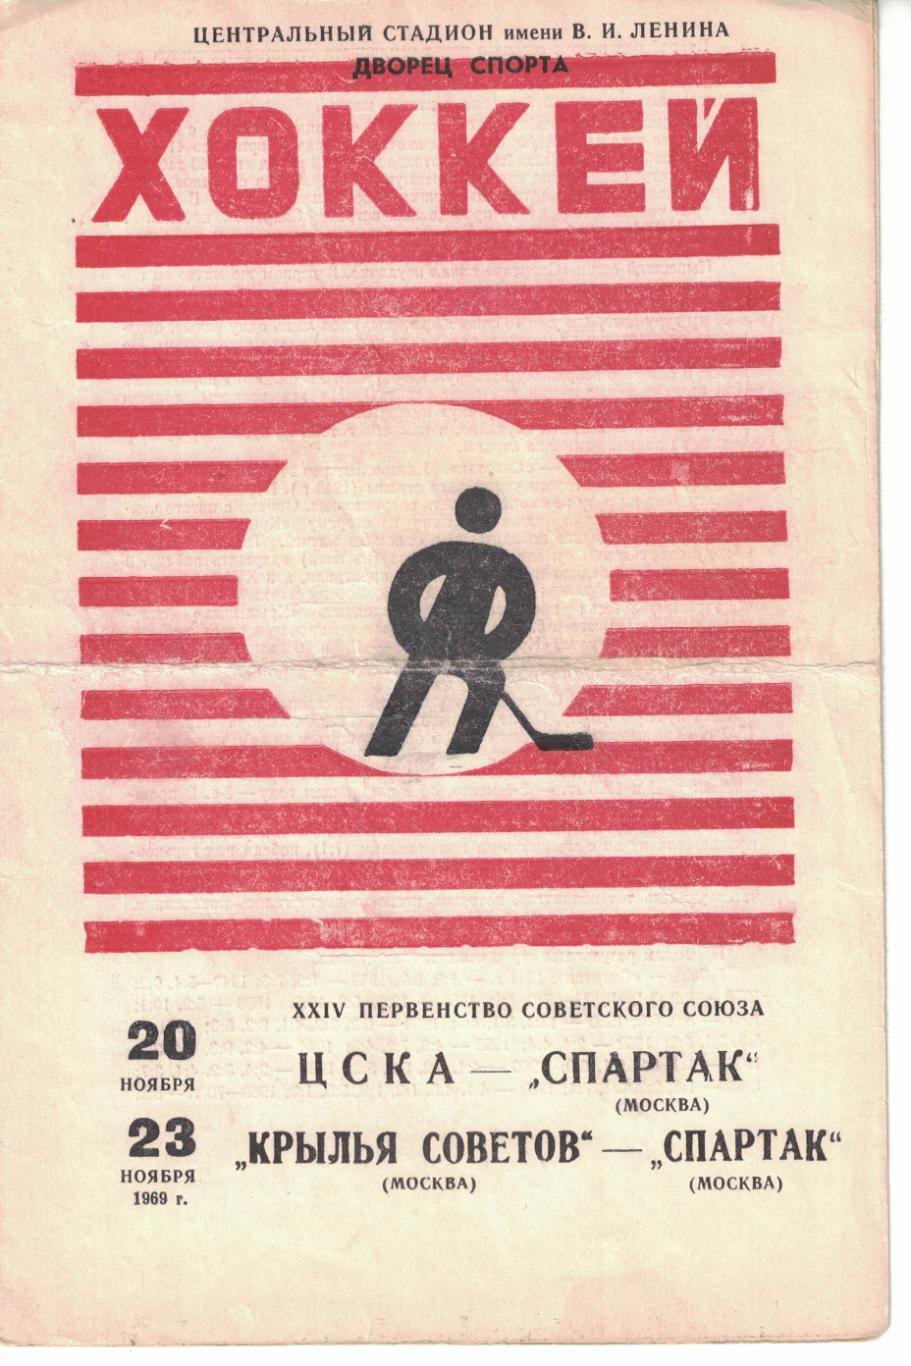 ЦСКА - Спартак Москва, Крылья Советов Москва - Спартак Москва 20 и 23.11.1969